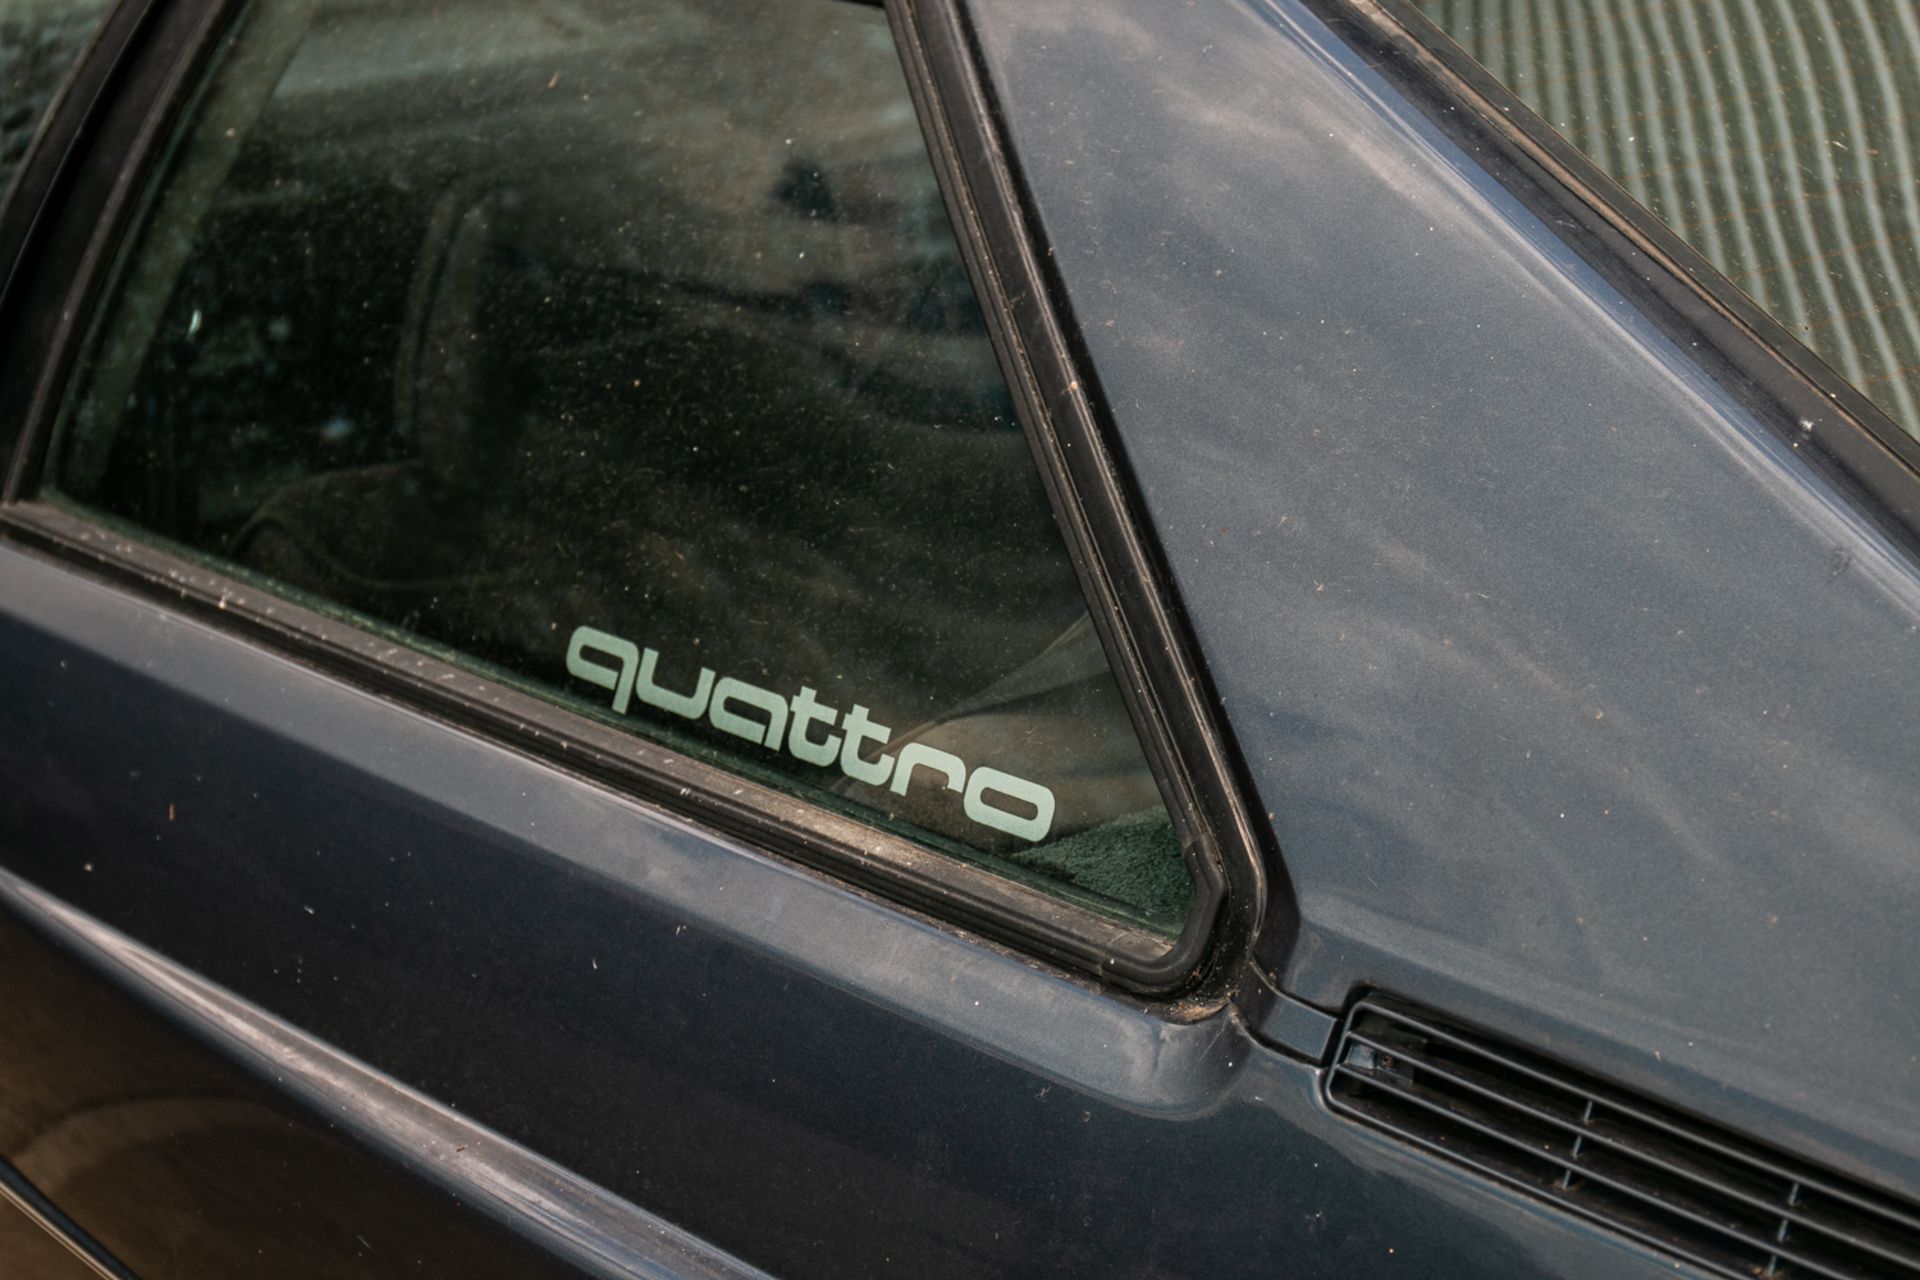 1981 Audi Ur-Quattro Turbo Coupe - Image 8 of 20